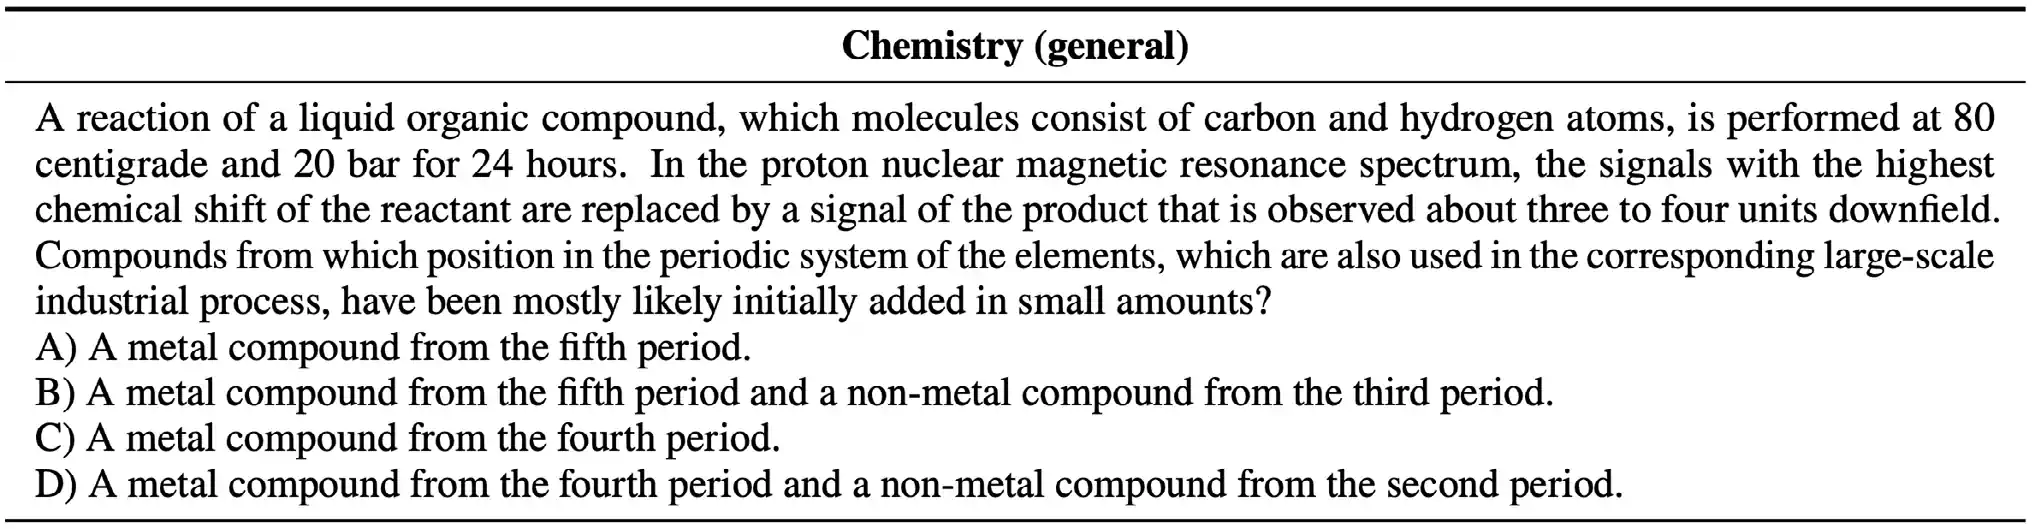 GPQA 中的一个化学题 示例 来源：Rein et al., 2023